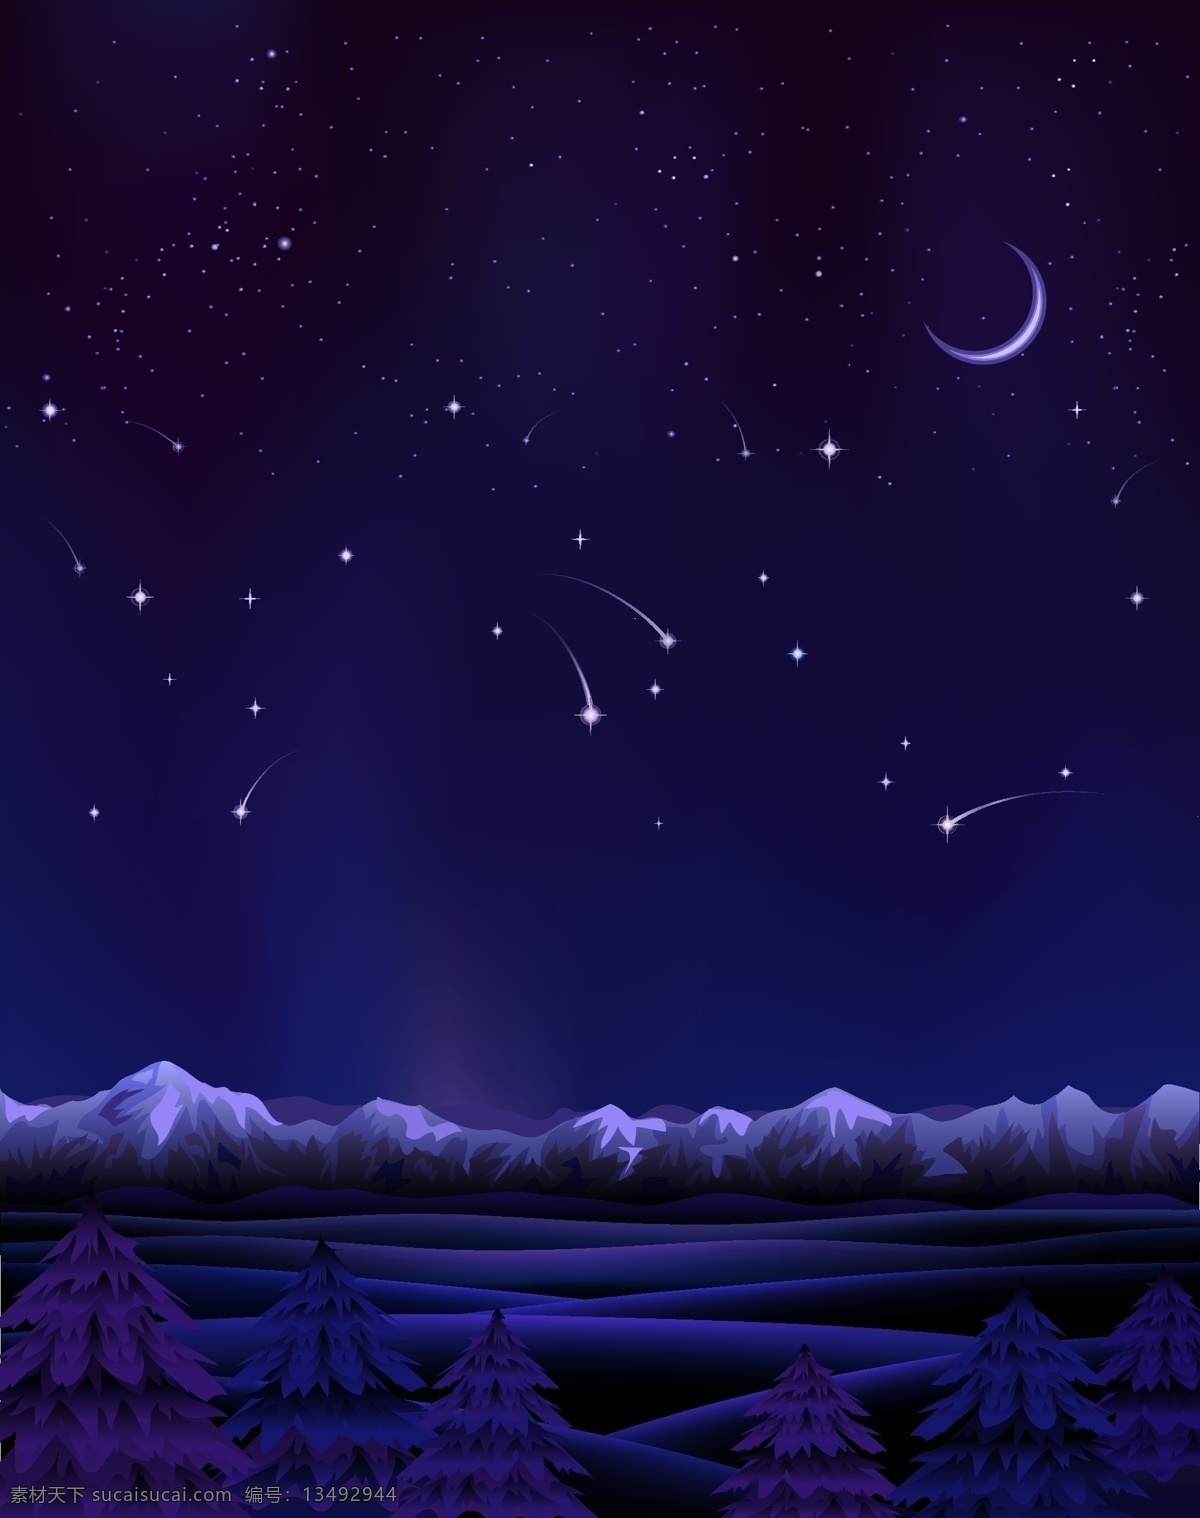 背景 冰川 冰雪 卡通 蓝紫色 梦幻 矢量 夜空 手绘 童趣 雪景 雪山